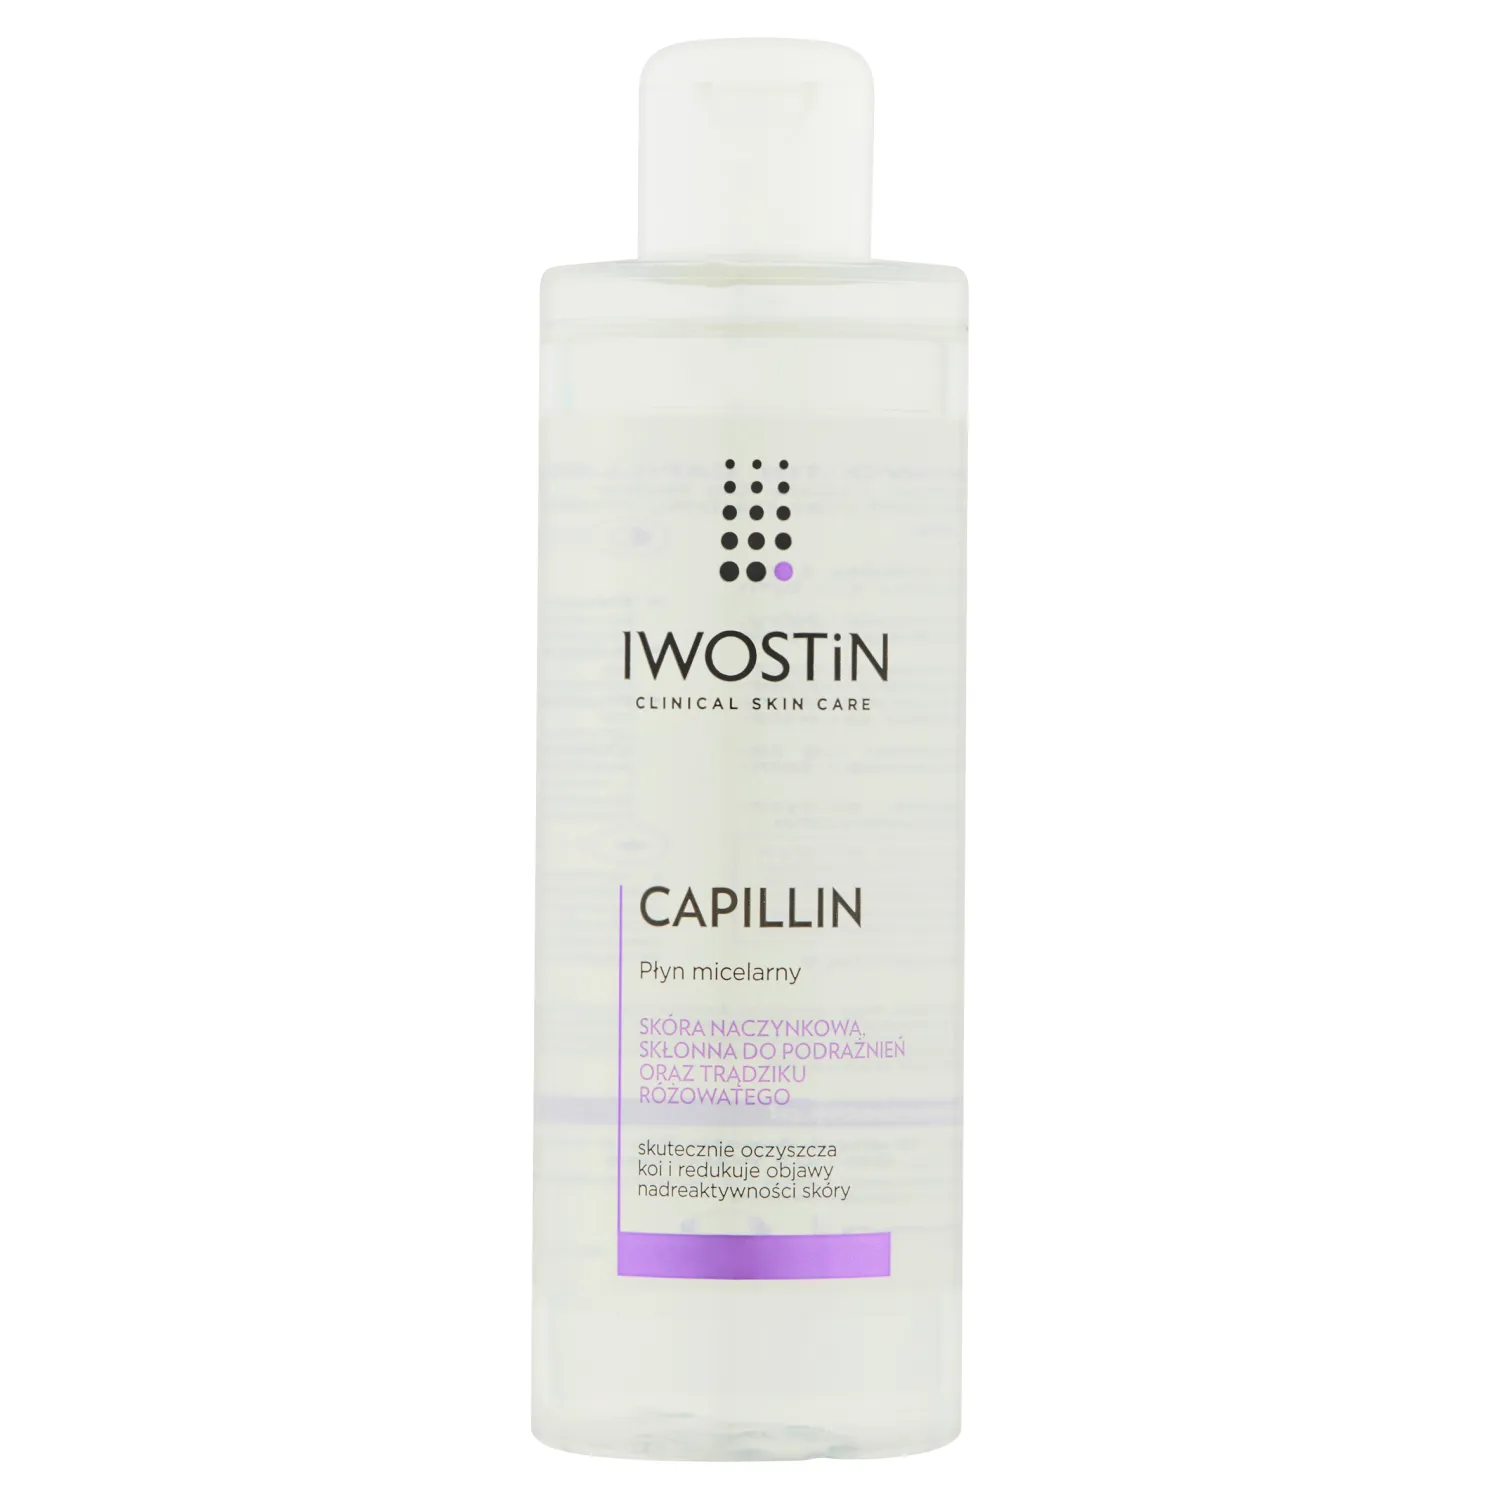 Iwostin Capillin, płyn micelarny, skóra naczynkowa, 215 ml